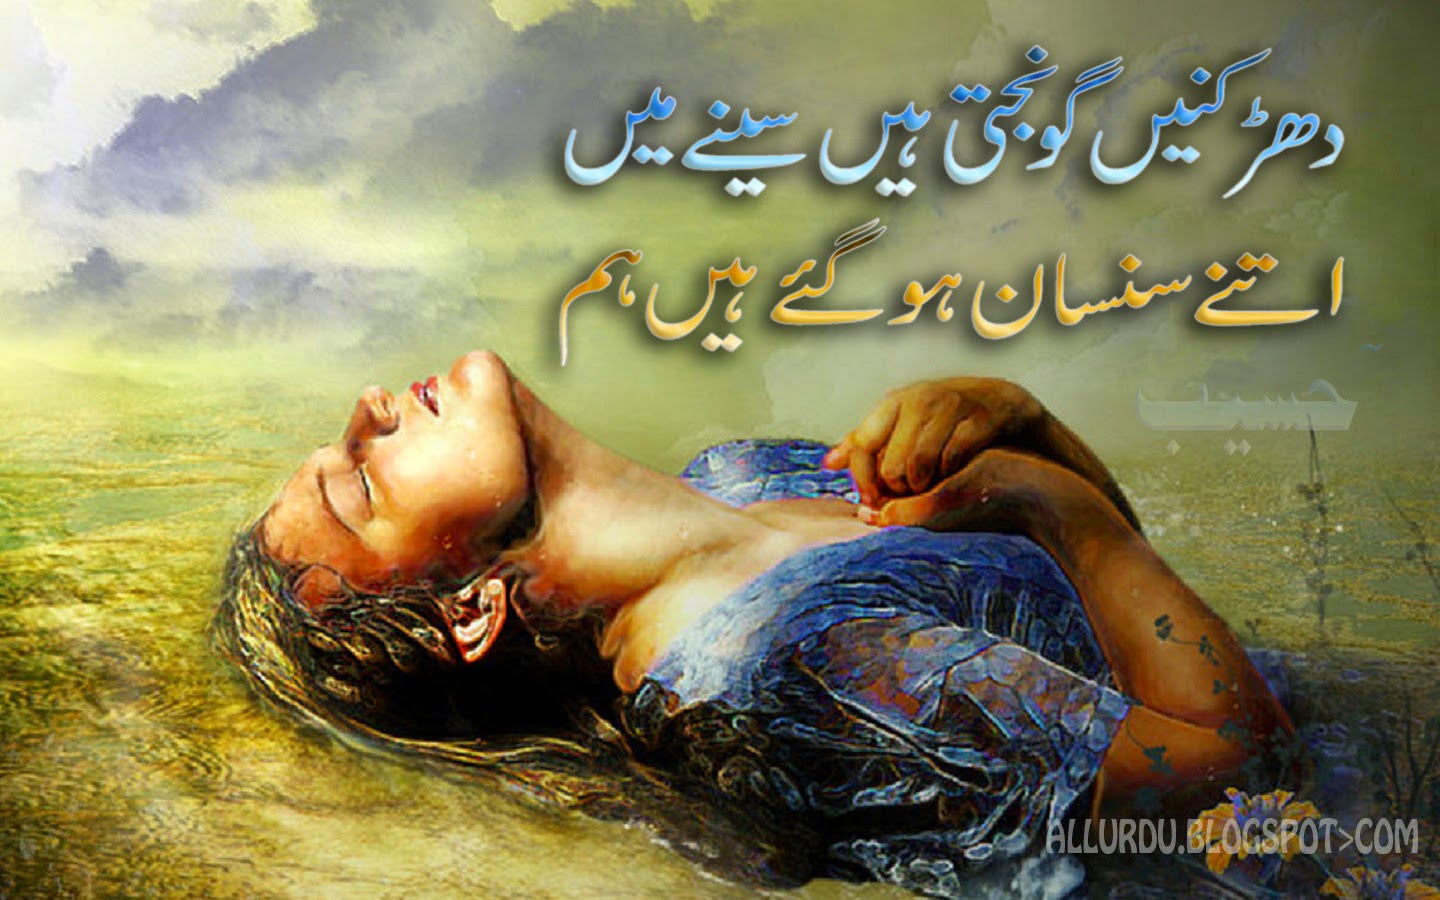 12 Best Designed Sad Urdu Poetry Images - VOL 1 | All ...